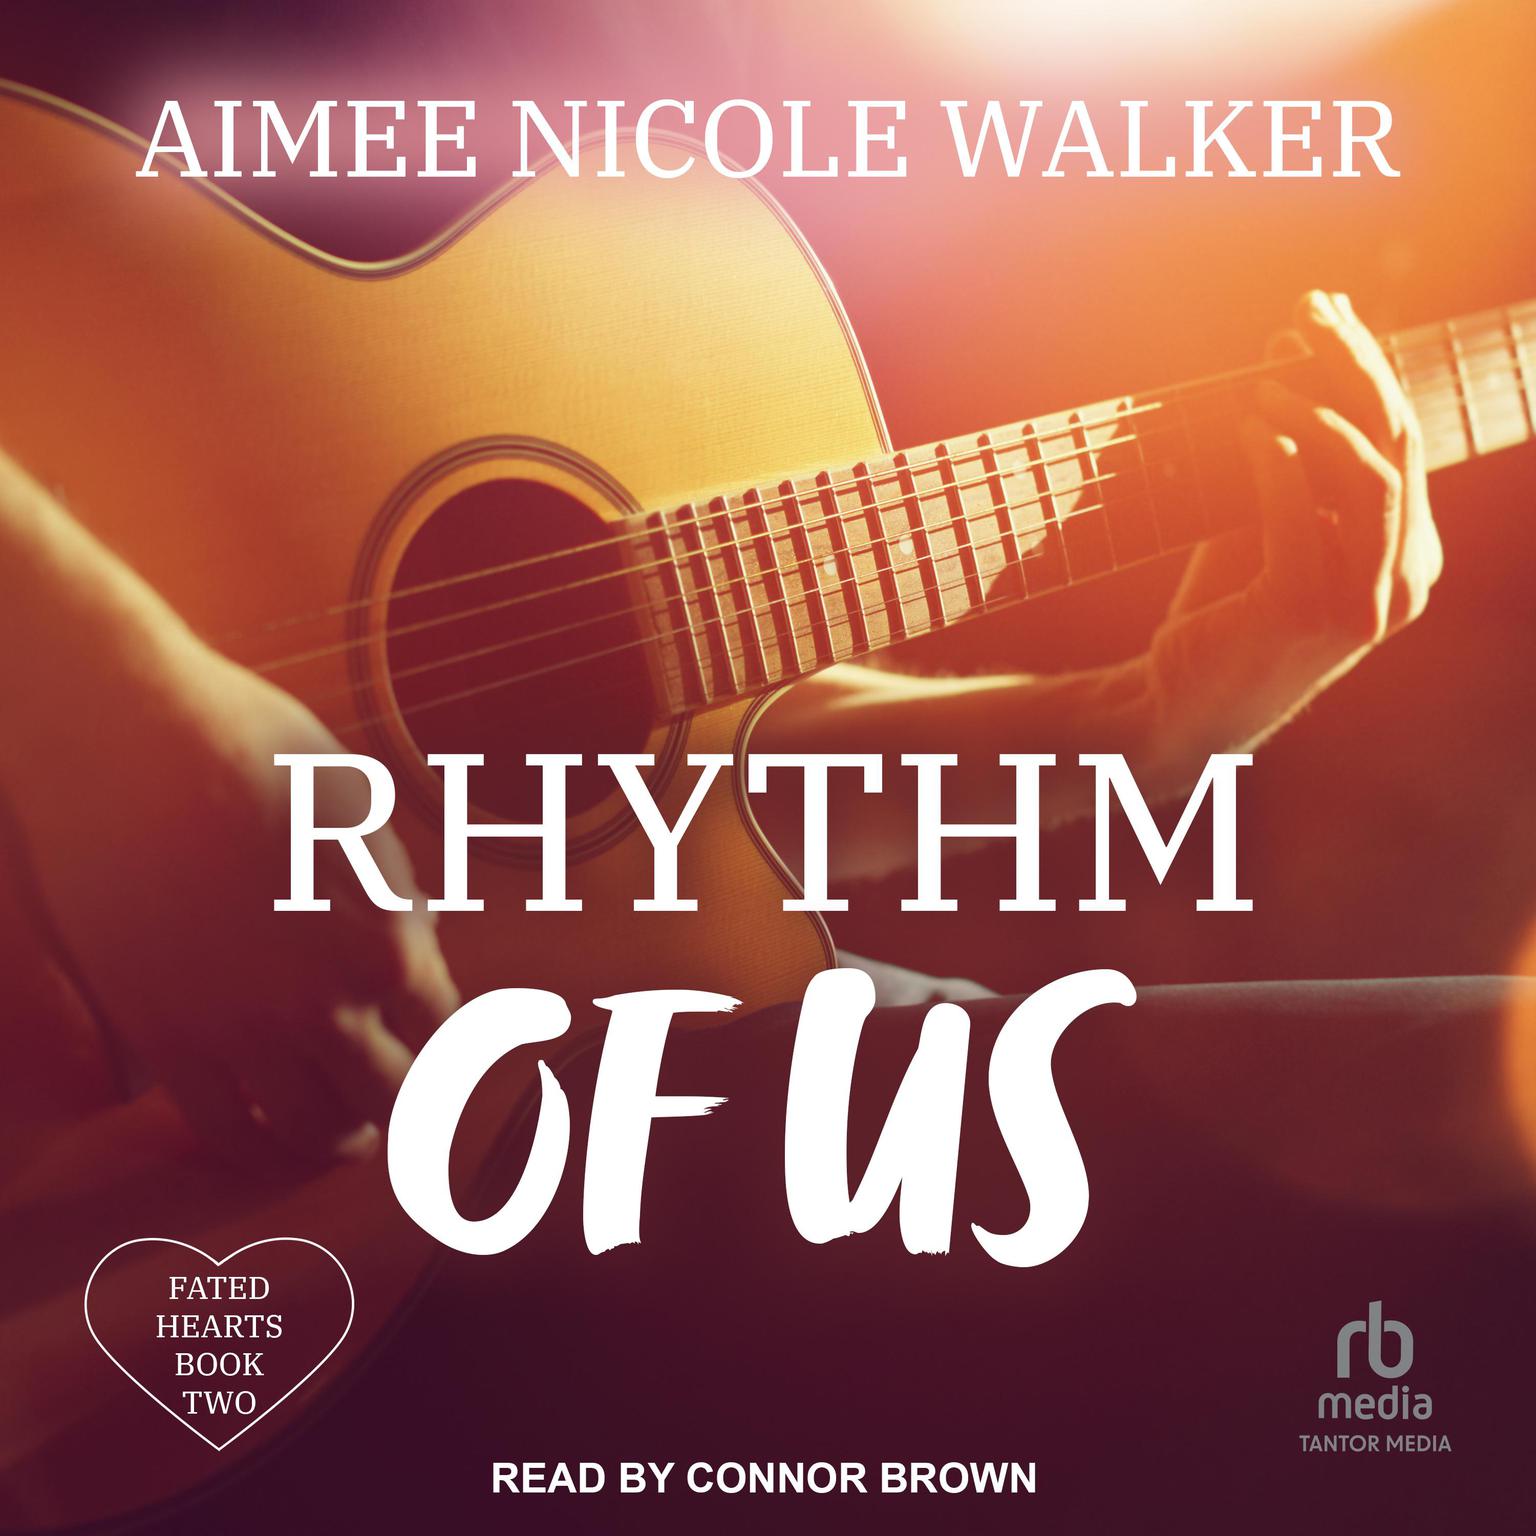 Rhythm of Us Audiobook, by Aimee Nicole Walker